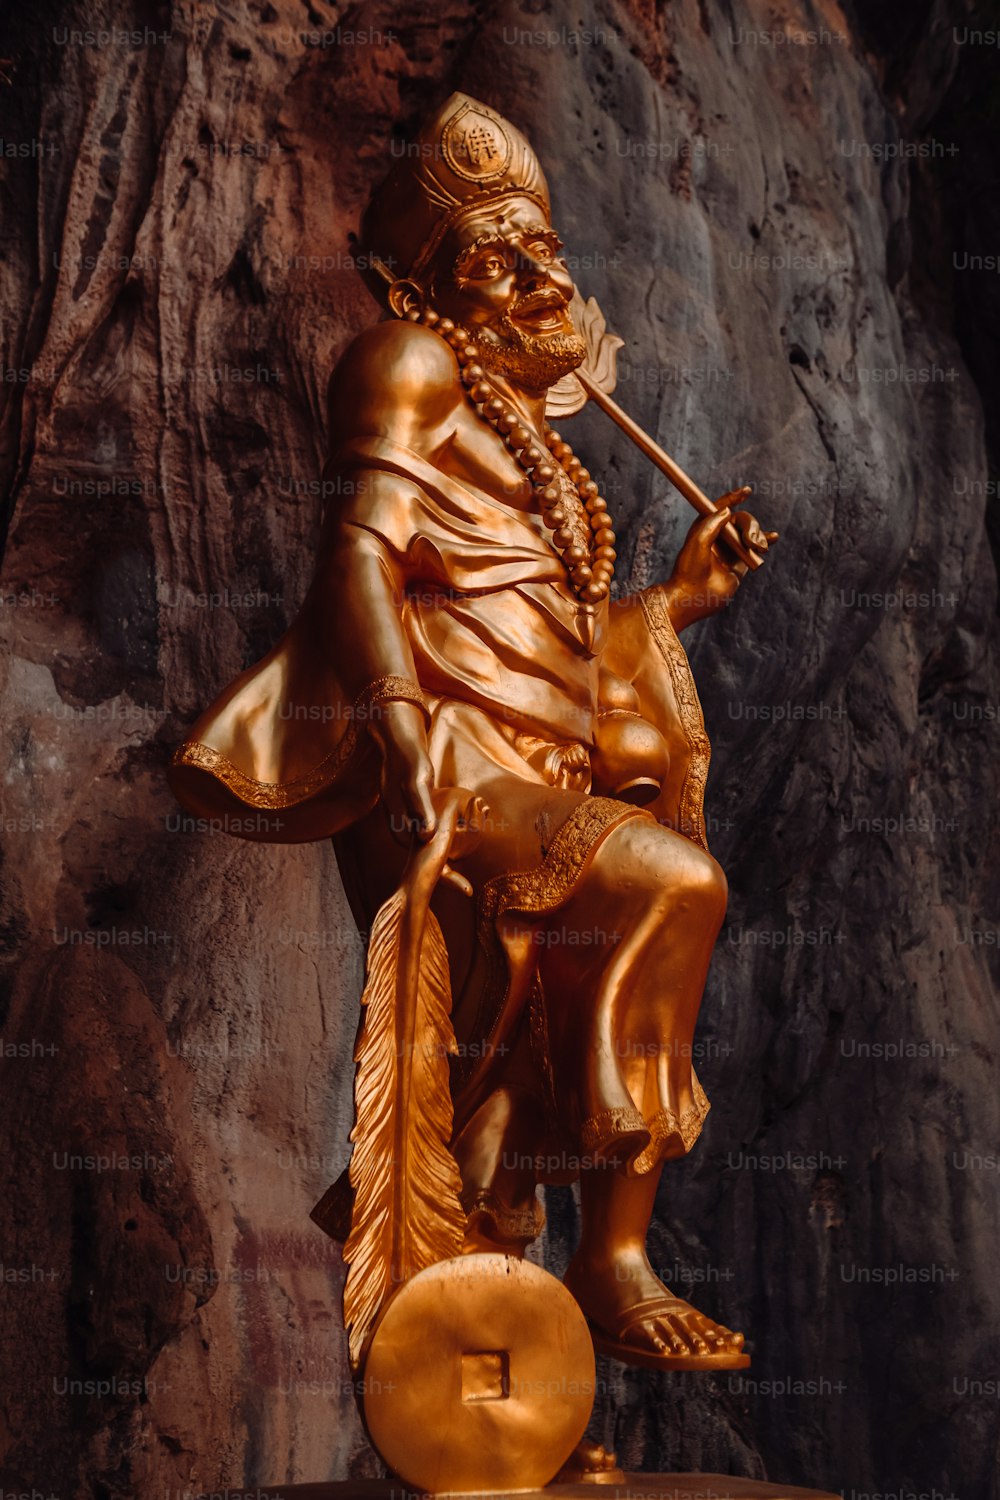 una statua di un uomo con una pipa in mano